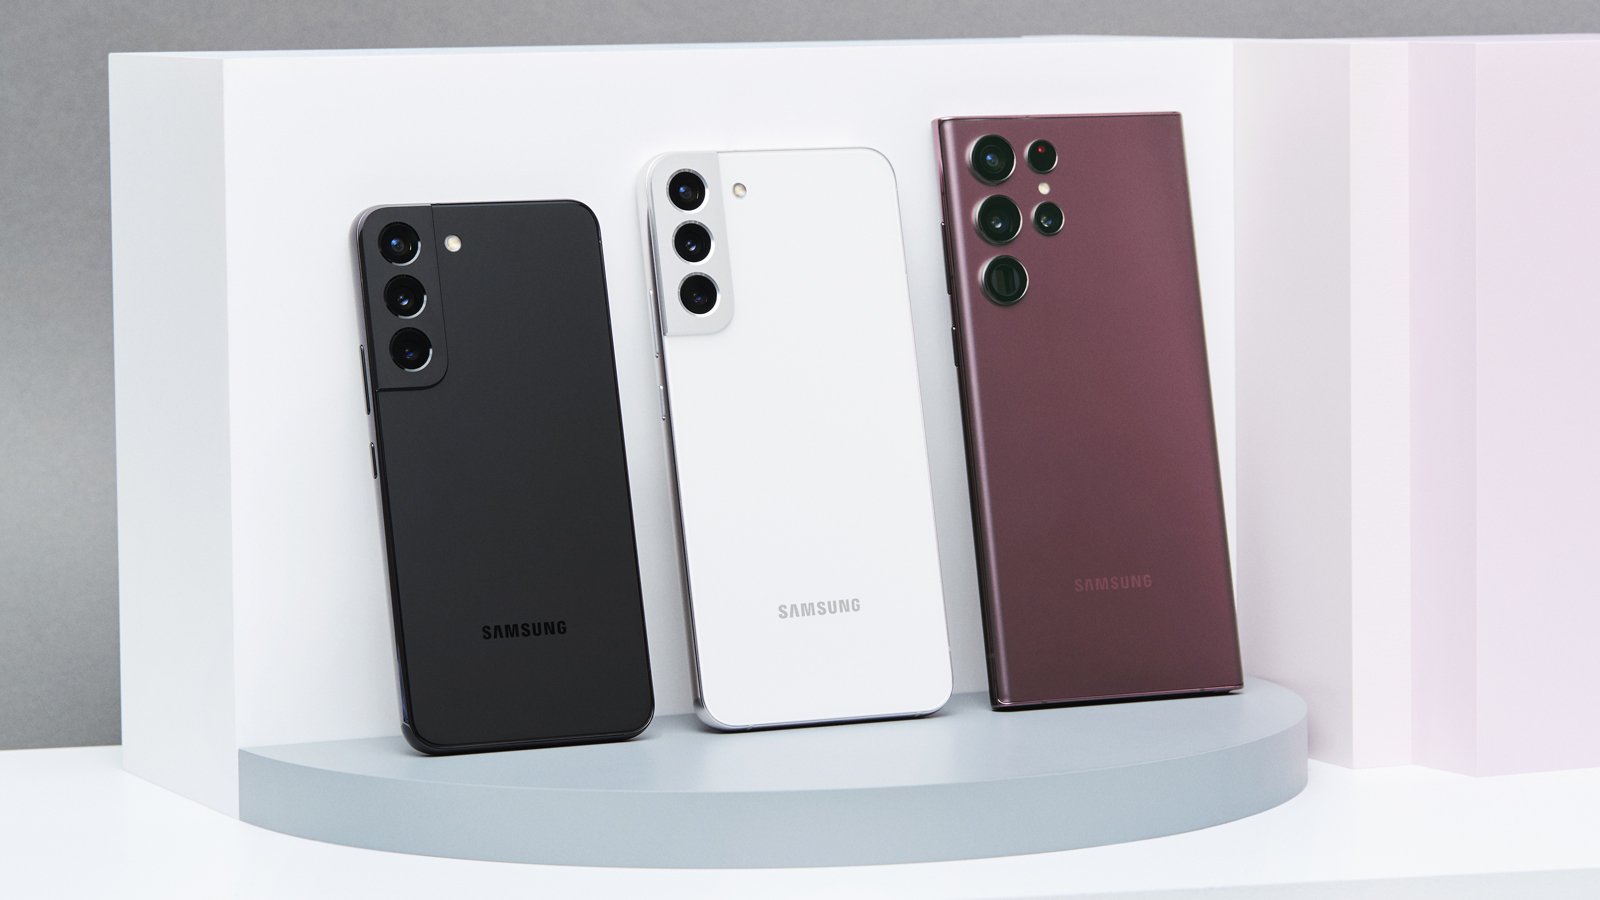 La famiglia Samsung Galaxy S22, appoggiata sul retro dei telefoni in esposizione